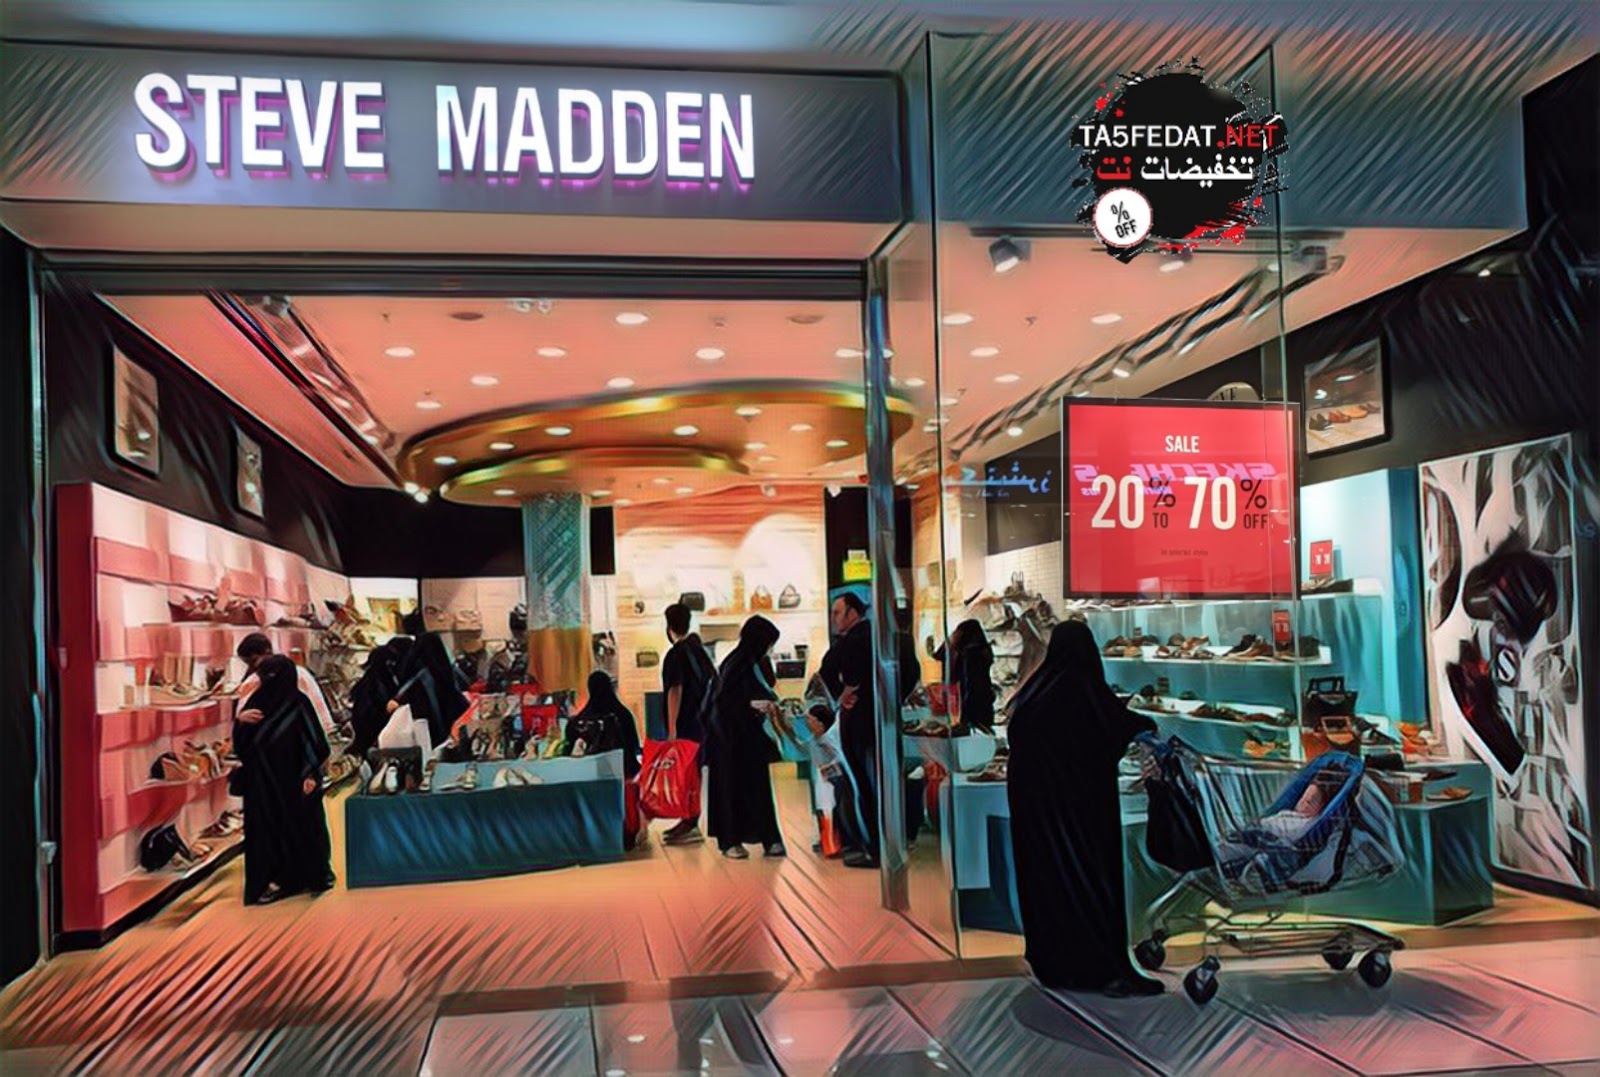 فروع ستيف مادن Steve Madden في السعودية